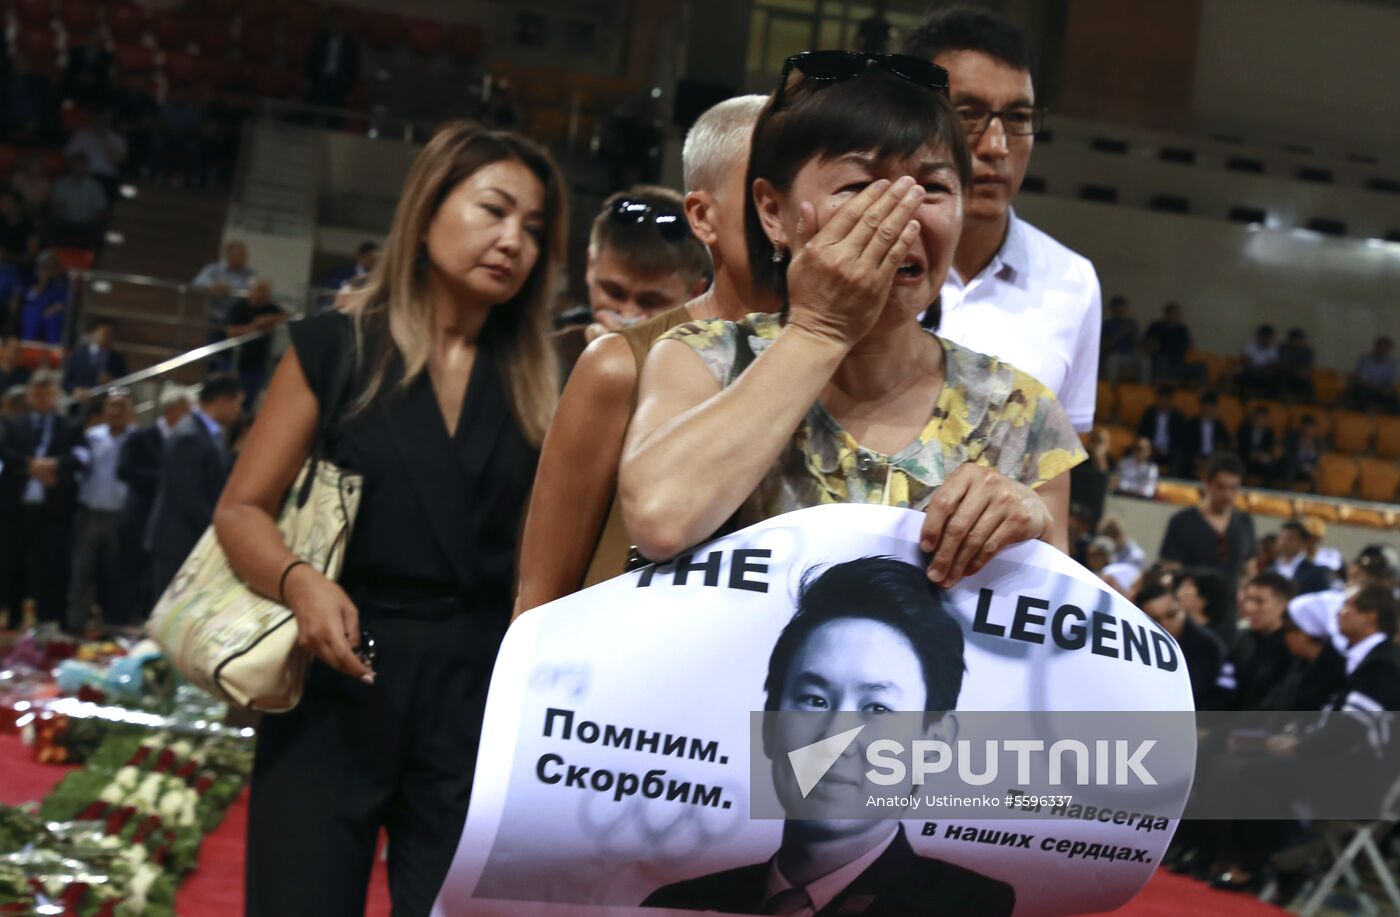 Farewell ceremony for figure skater Denis Ten in Kazakhstan